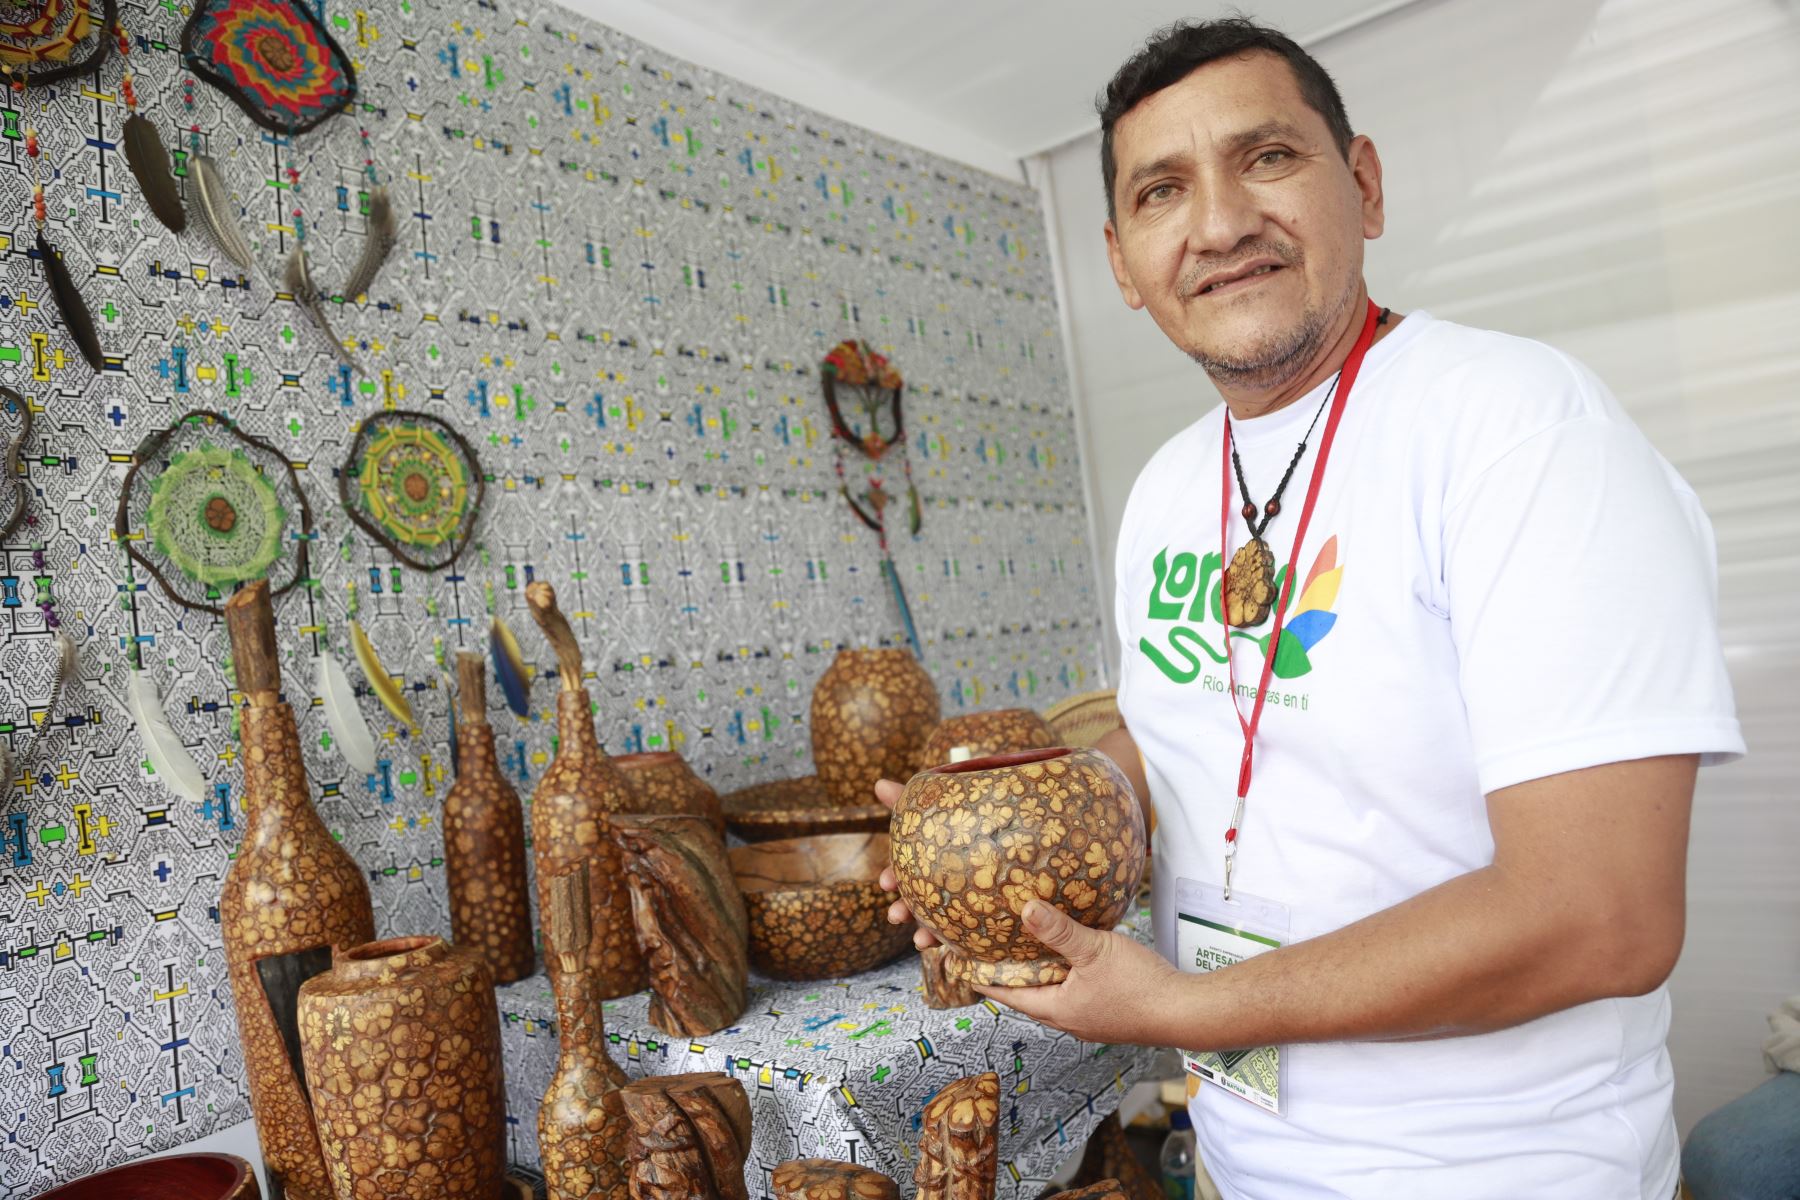 Cerca de treinta artesanos y artesanas de Loreto,Amazonas,Ucayali y San Martín presentan sus mejores obras en el "Evento Empresarial de Artesanía Macroregional del Oriente",que promueve el Mincetur.
Foto: Mincetur